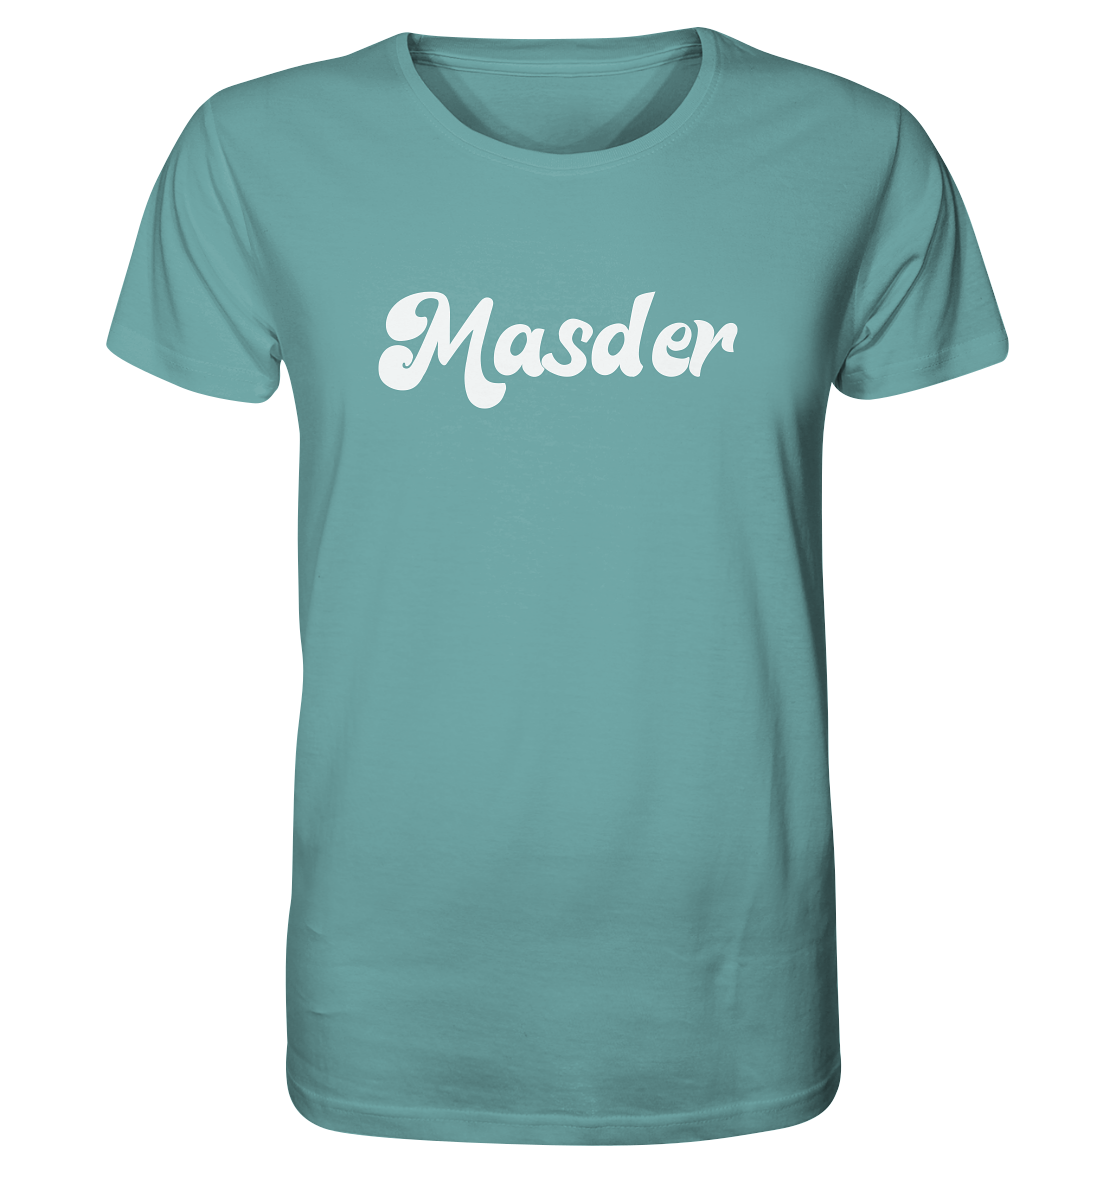 Kopie von #MASDER - Organic Shirt - Größe S